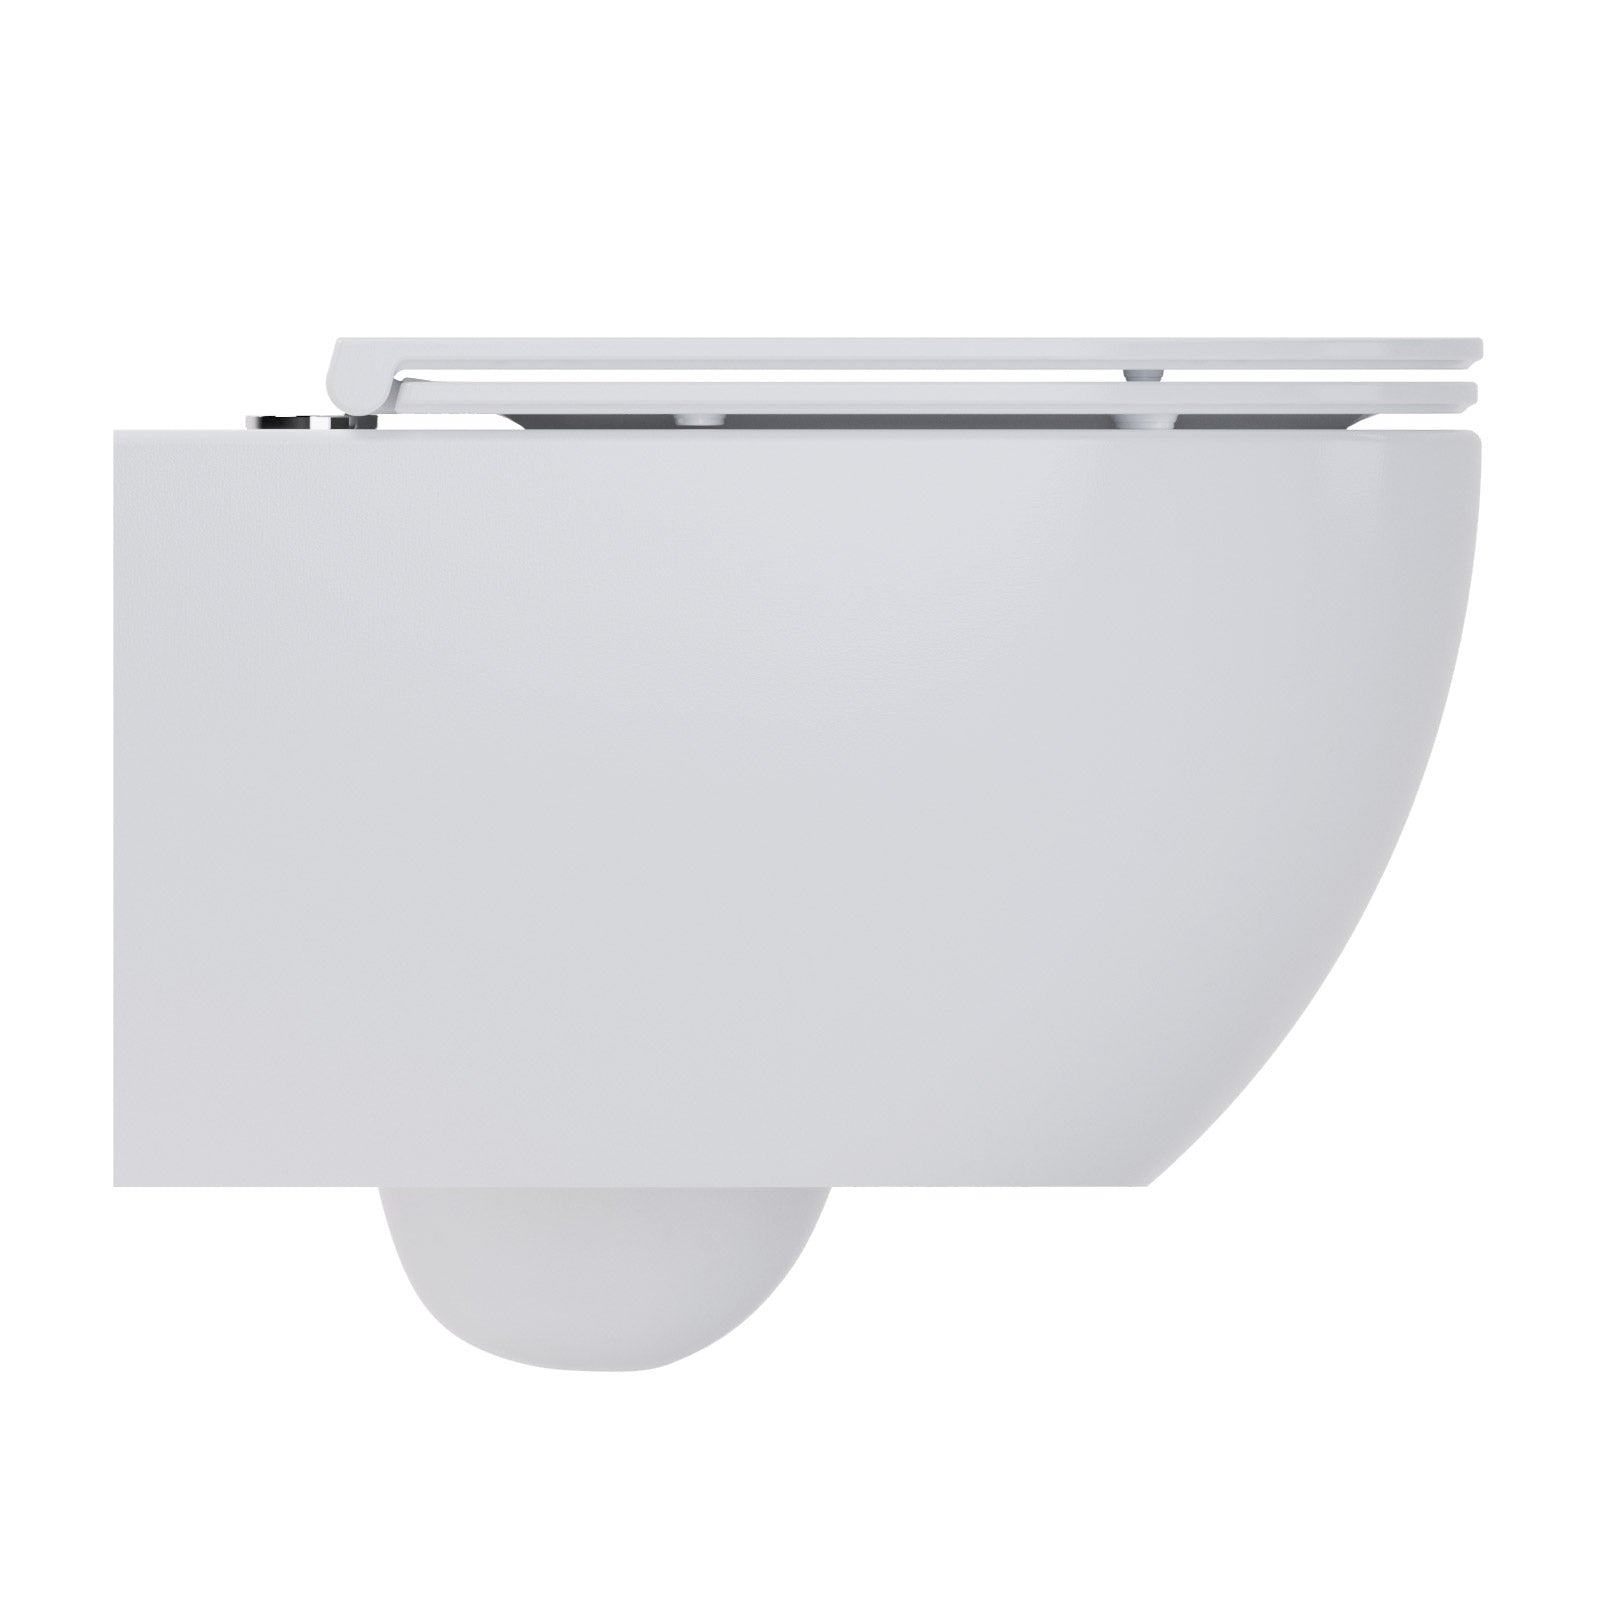 Whirlflush Hänge Wand WC Soho 3.0 Spülrandlos Tornado Spülung Weiß Glanz mit WC-Sitz Super Slim Toilette